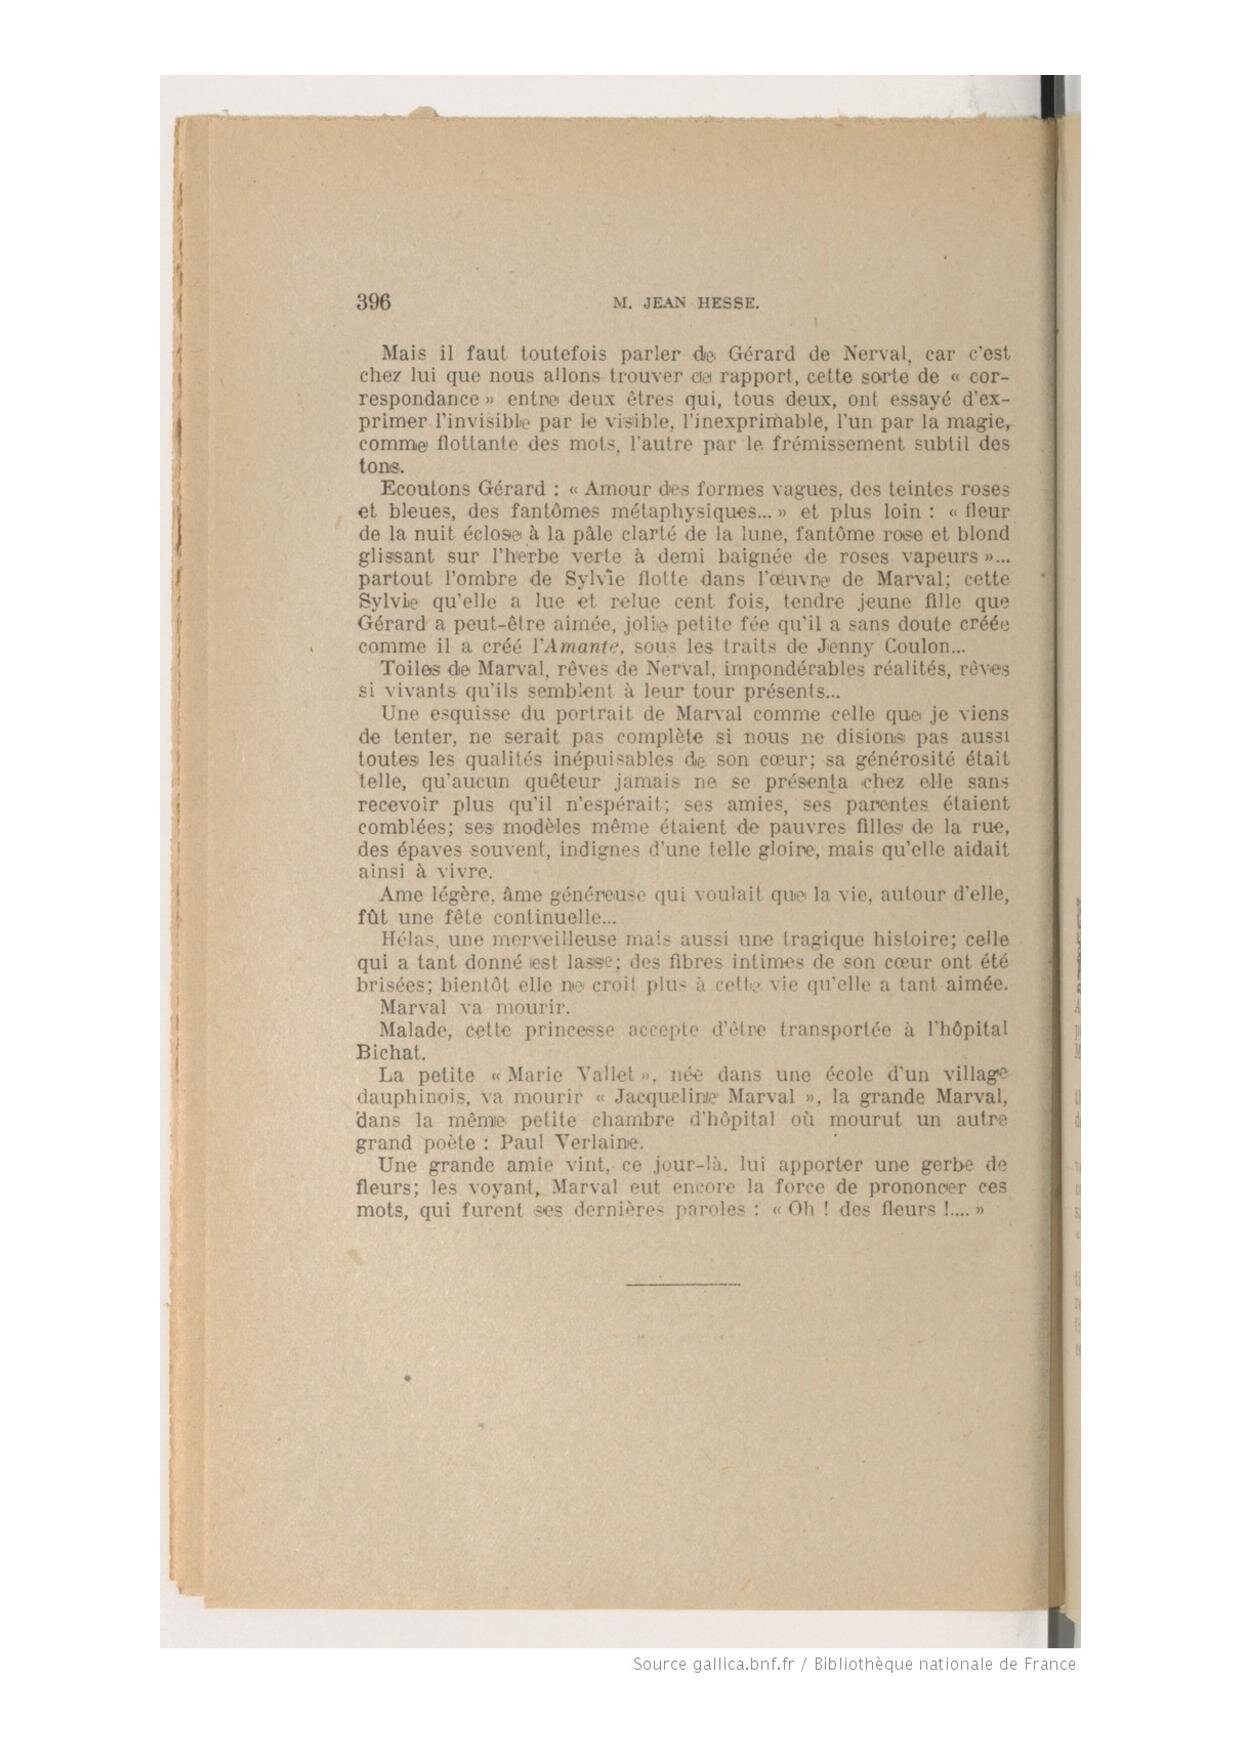 Bulletin de l'Académie Delphinale, Jean Hesse, 1946